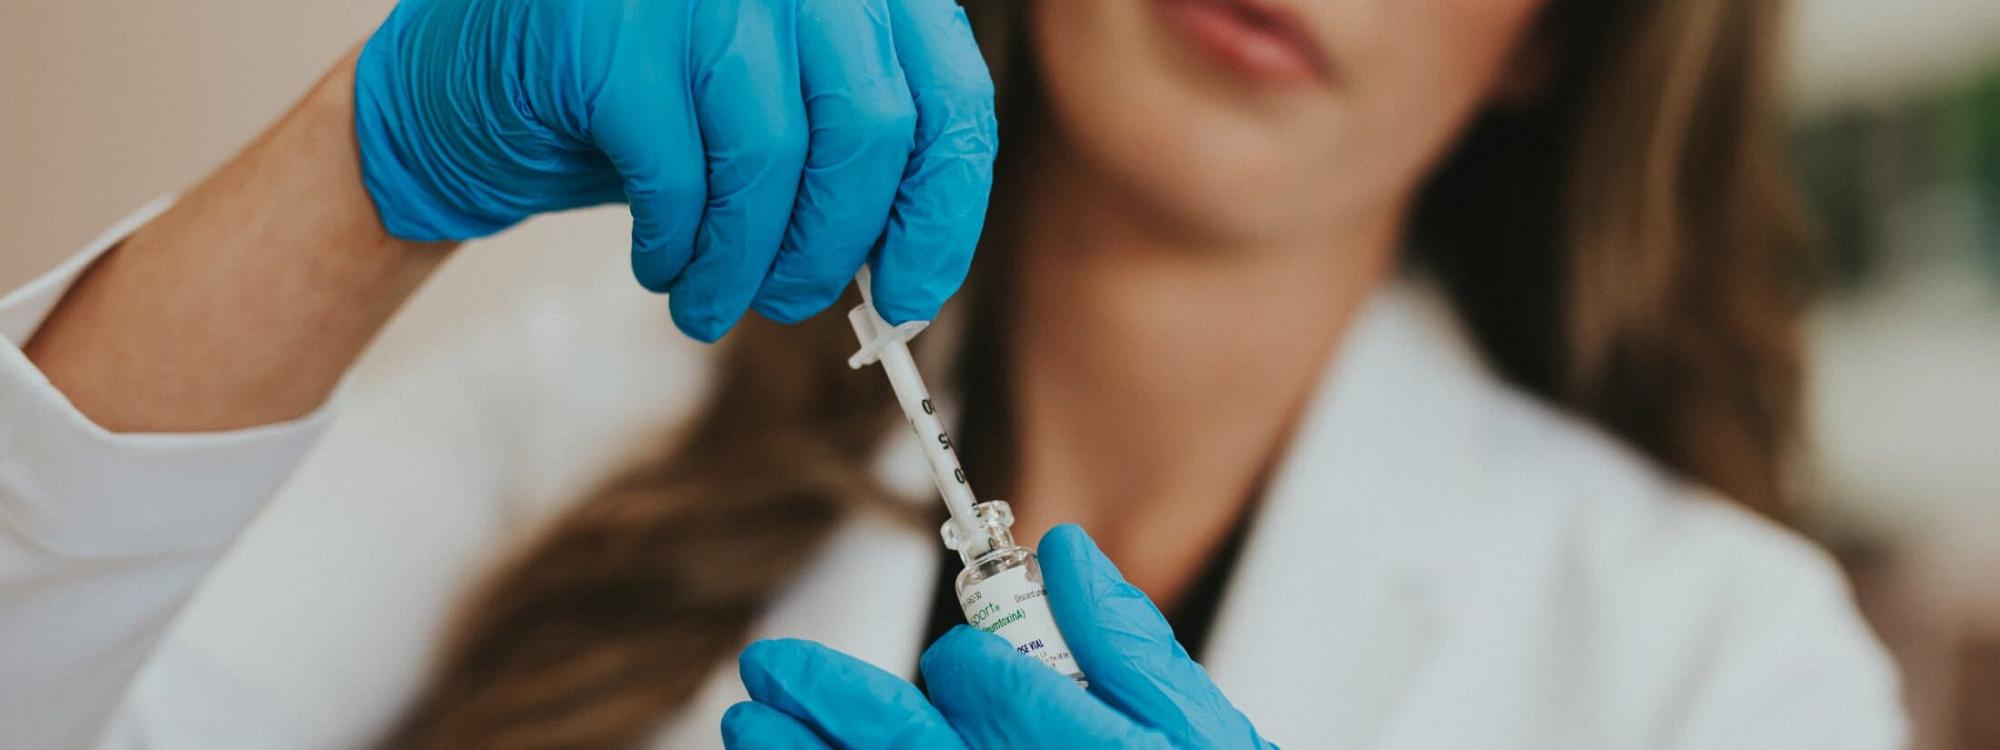 Woman Doctor filling syringe